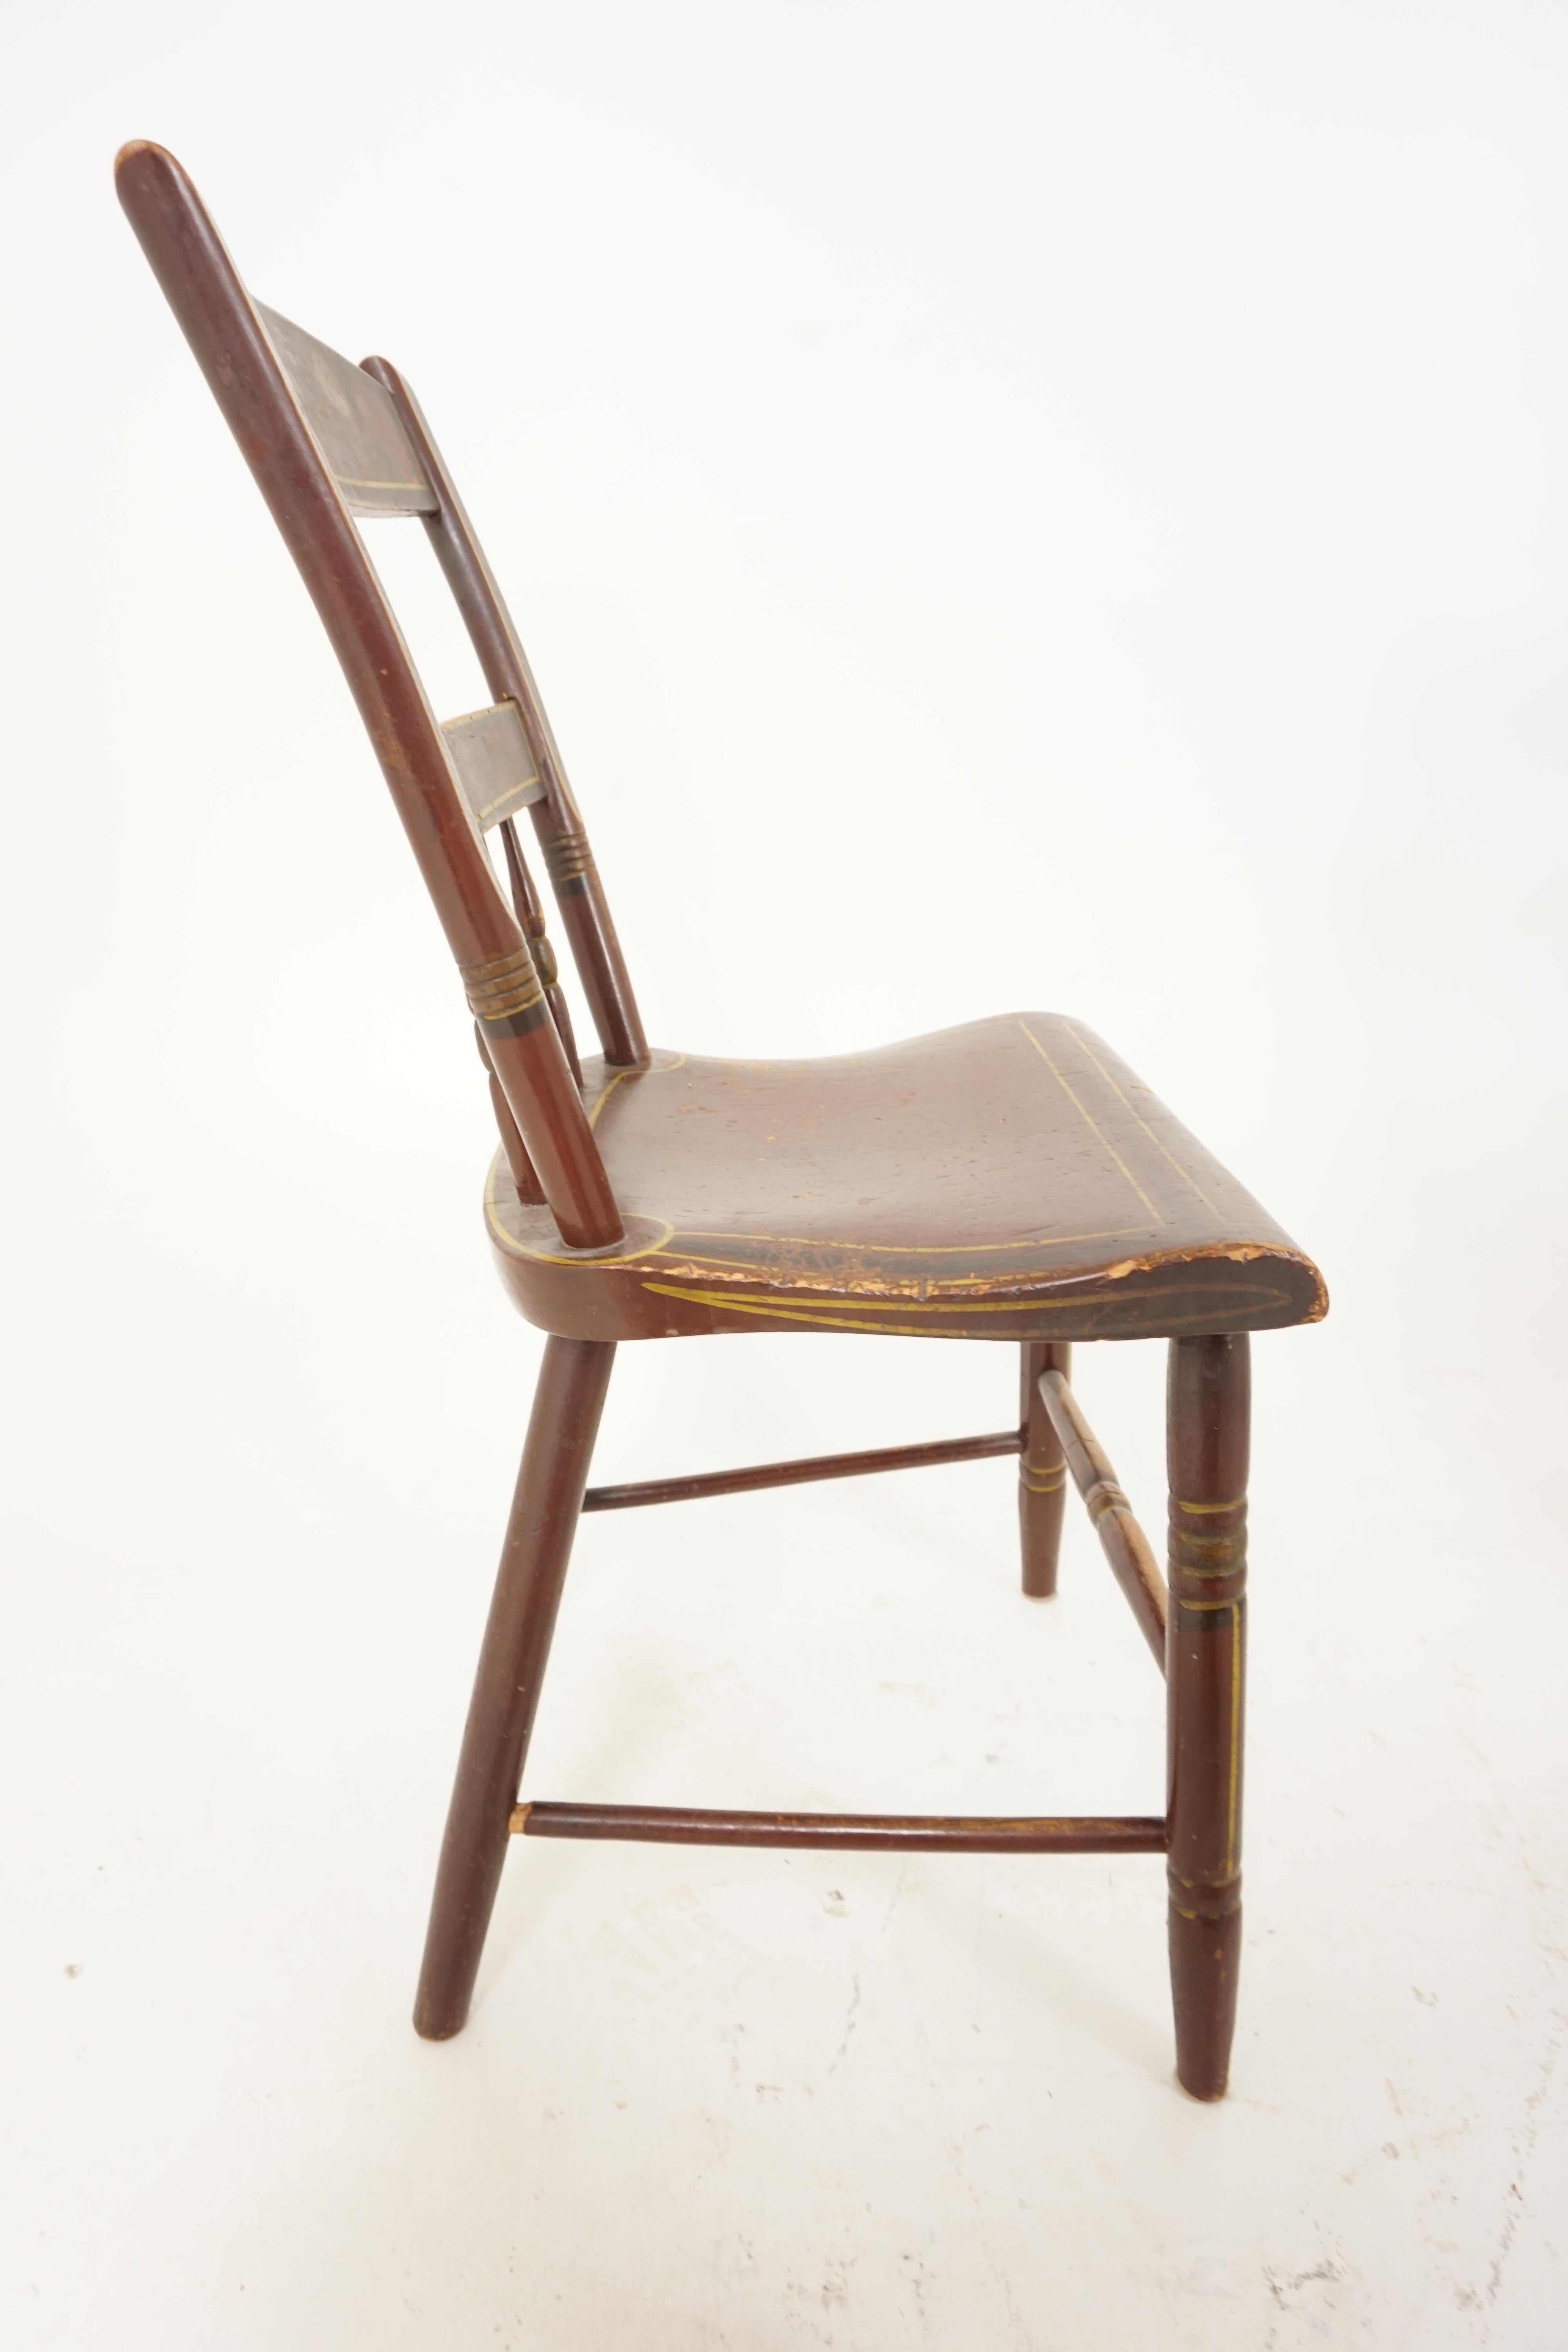 pennsylvania dutch chairs